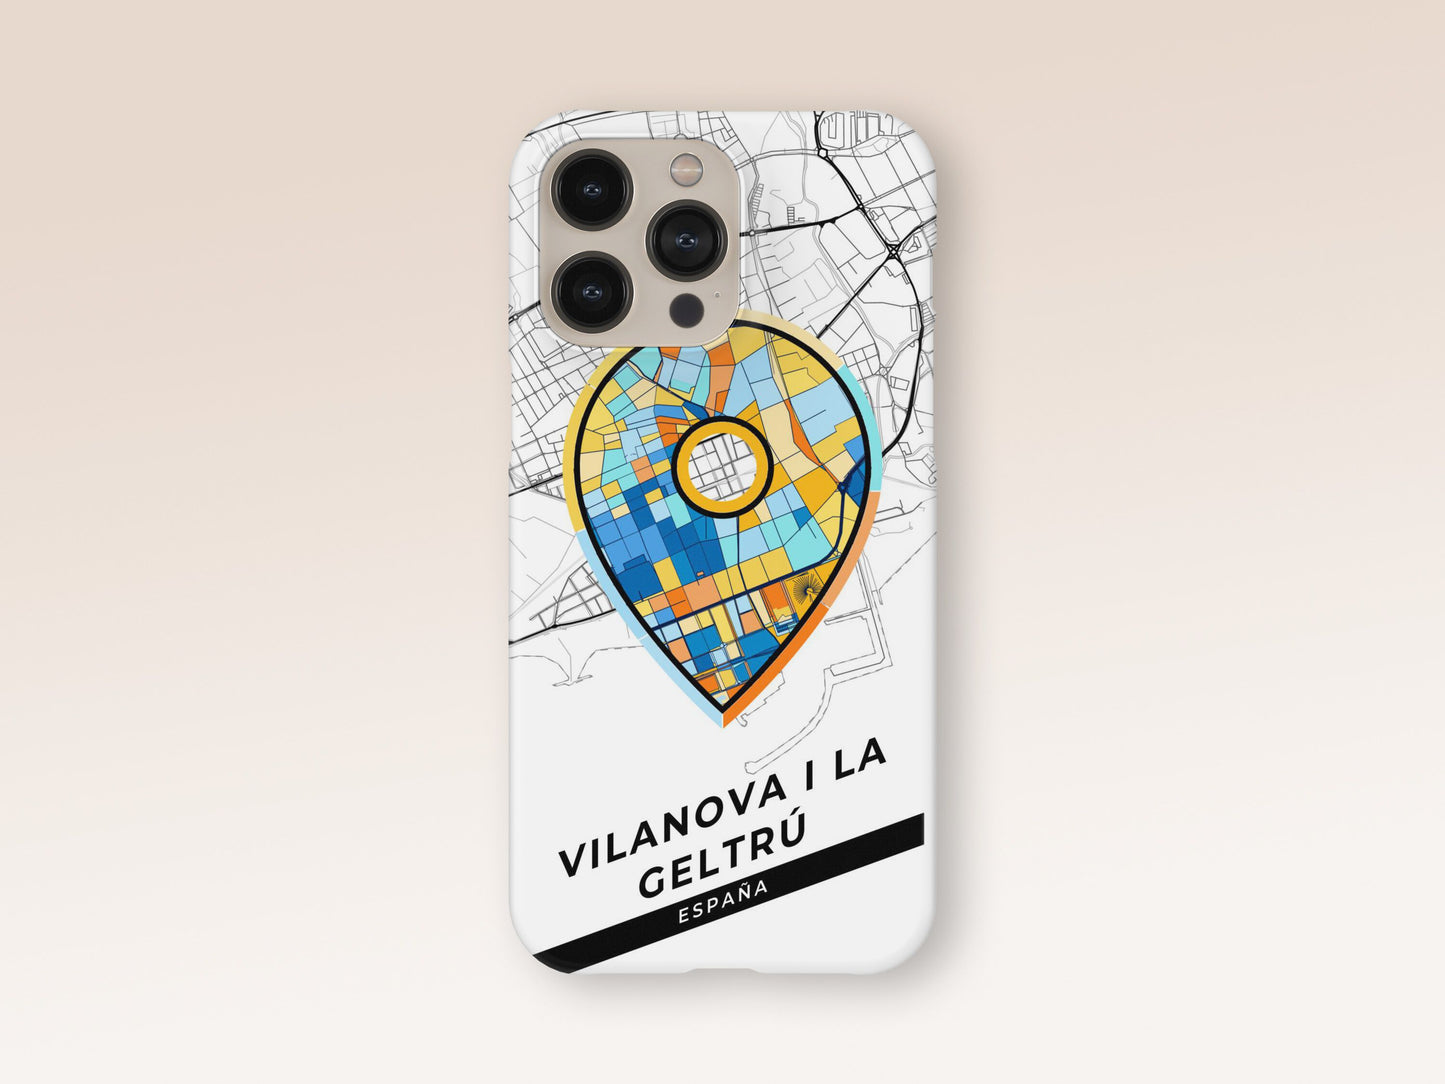 Vilanova I La Geltrú Spain slim phone case with colorful icon 1